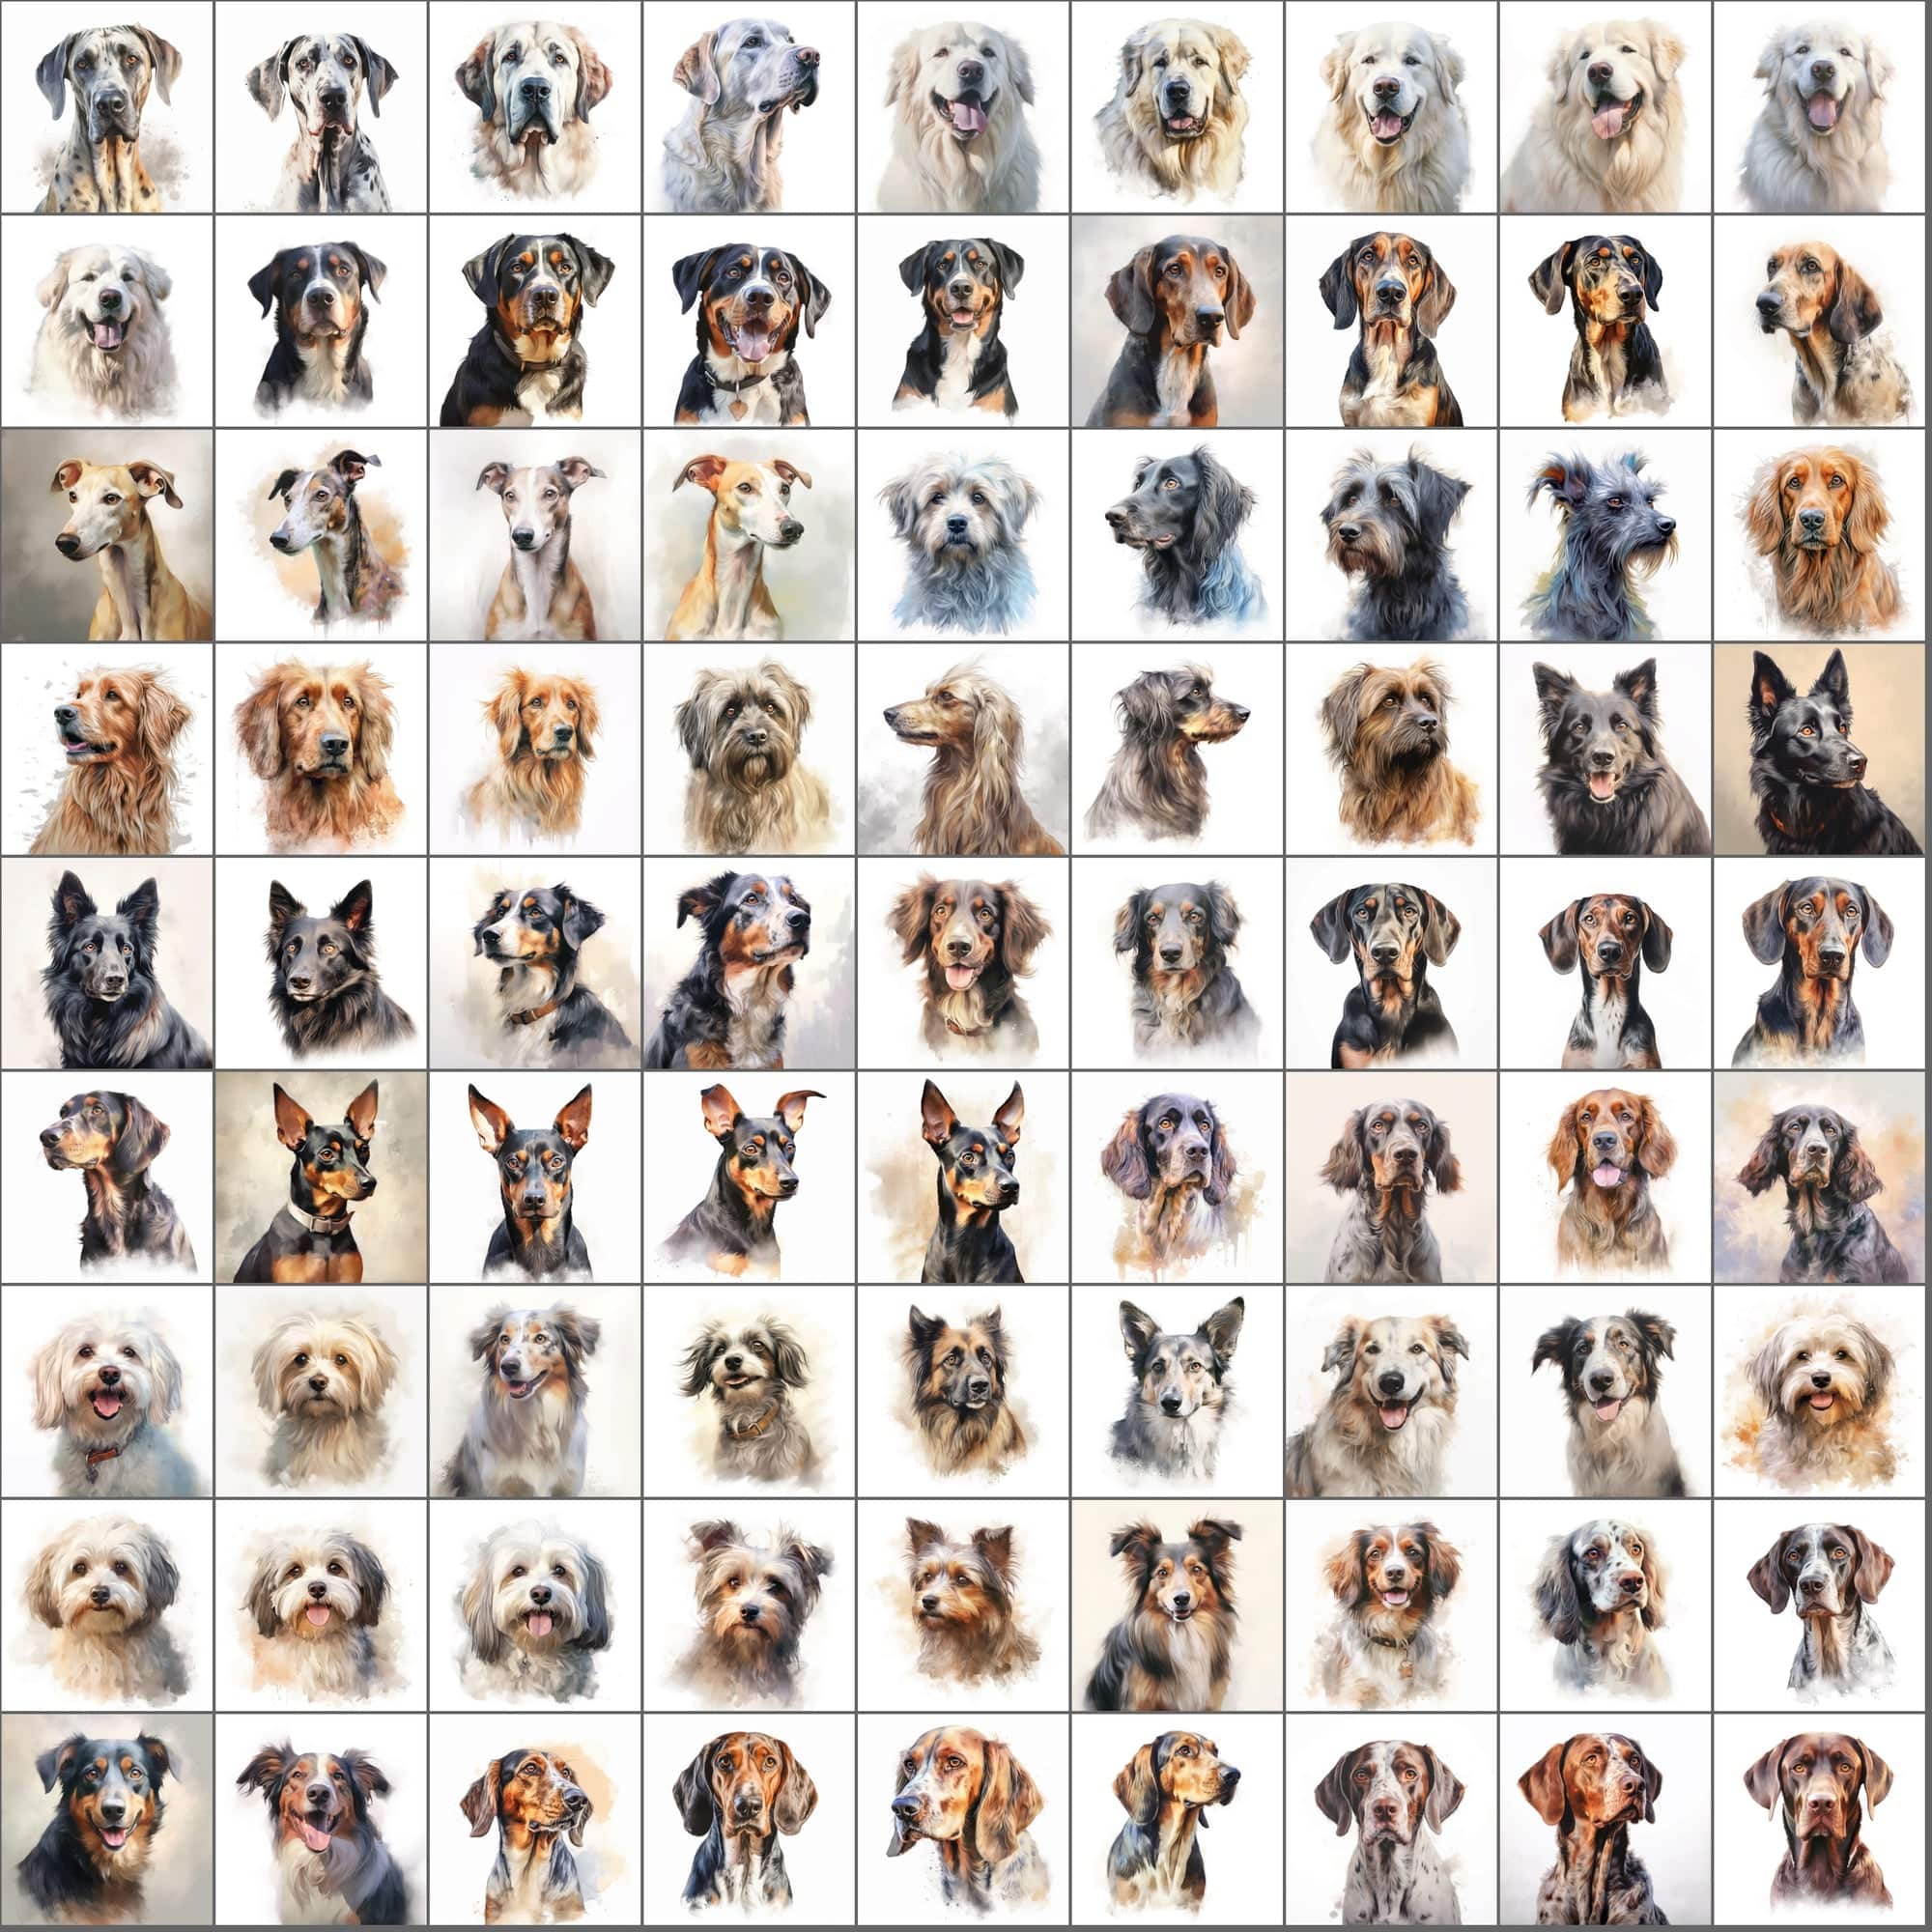 2600+ Dog Breed Art Images - Art Style with Transparent Background Digital Download Sumobundle